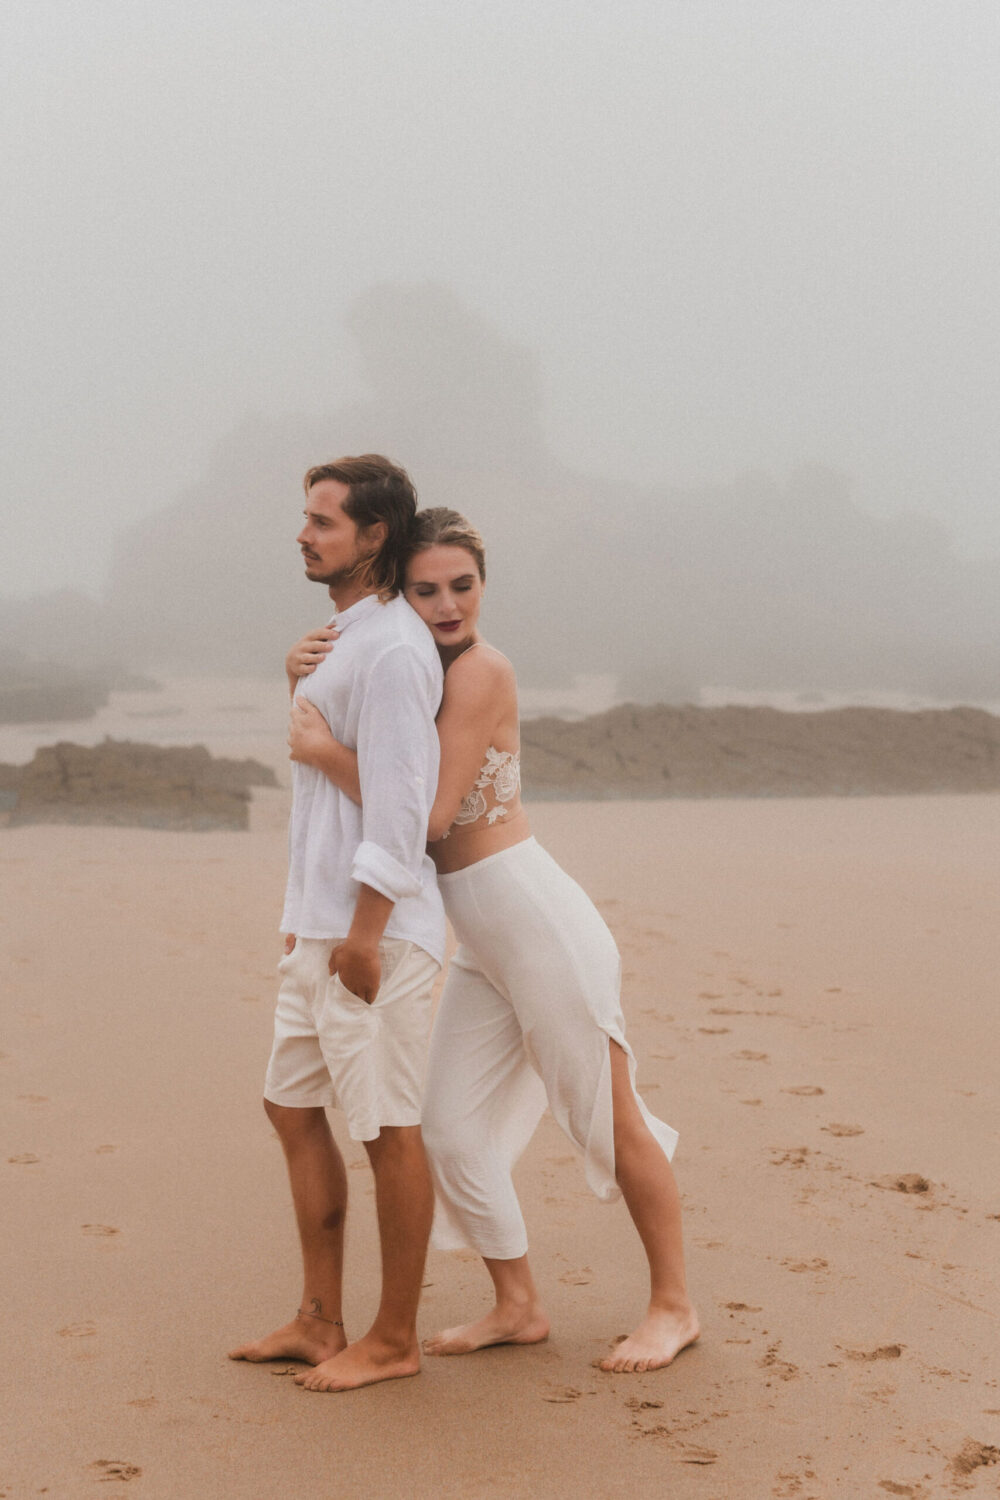 Deutsch: Hochzeitspaar erlebt innigen Augenblick am Strand Englisch: Wedding couple shares intimate moment on beach